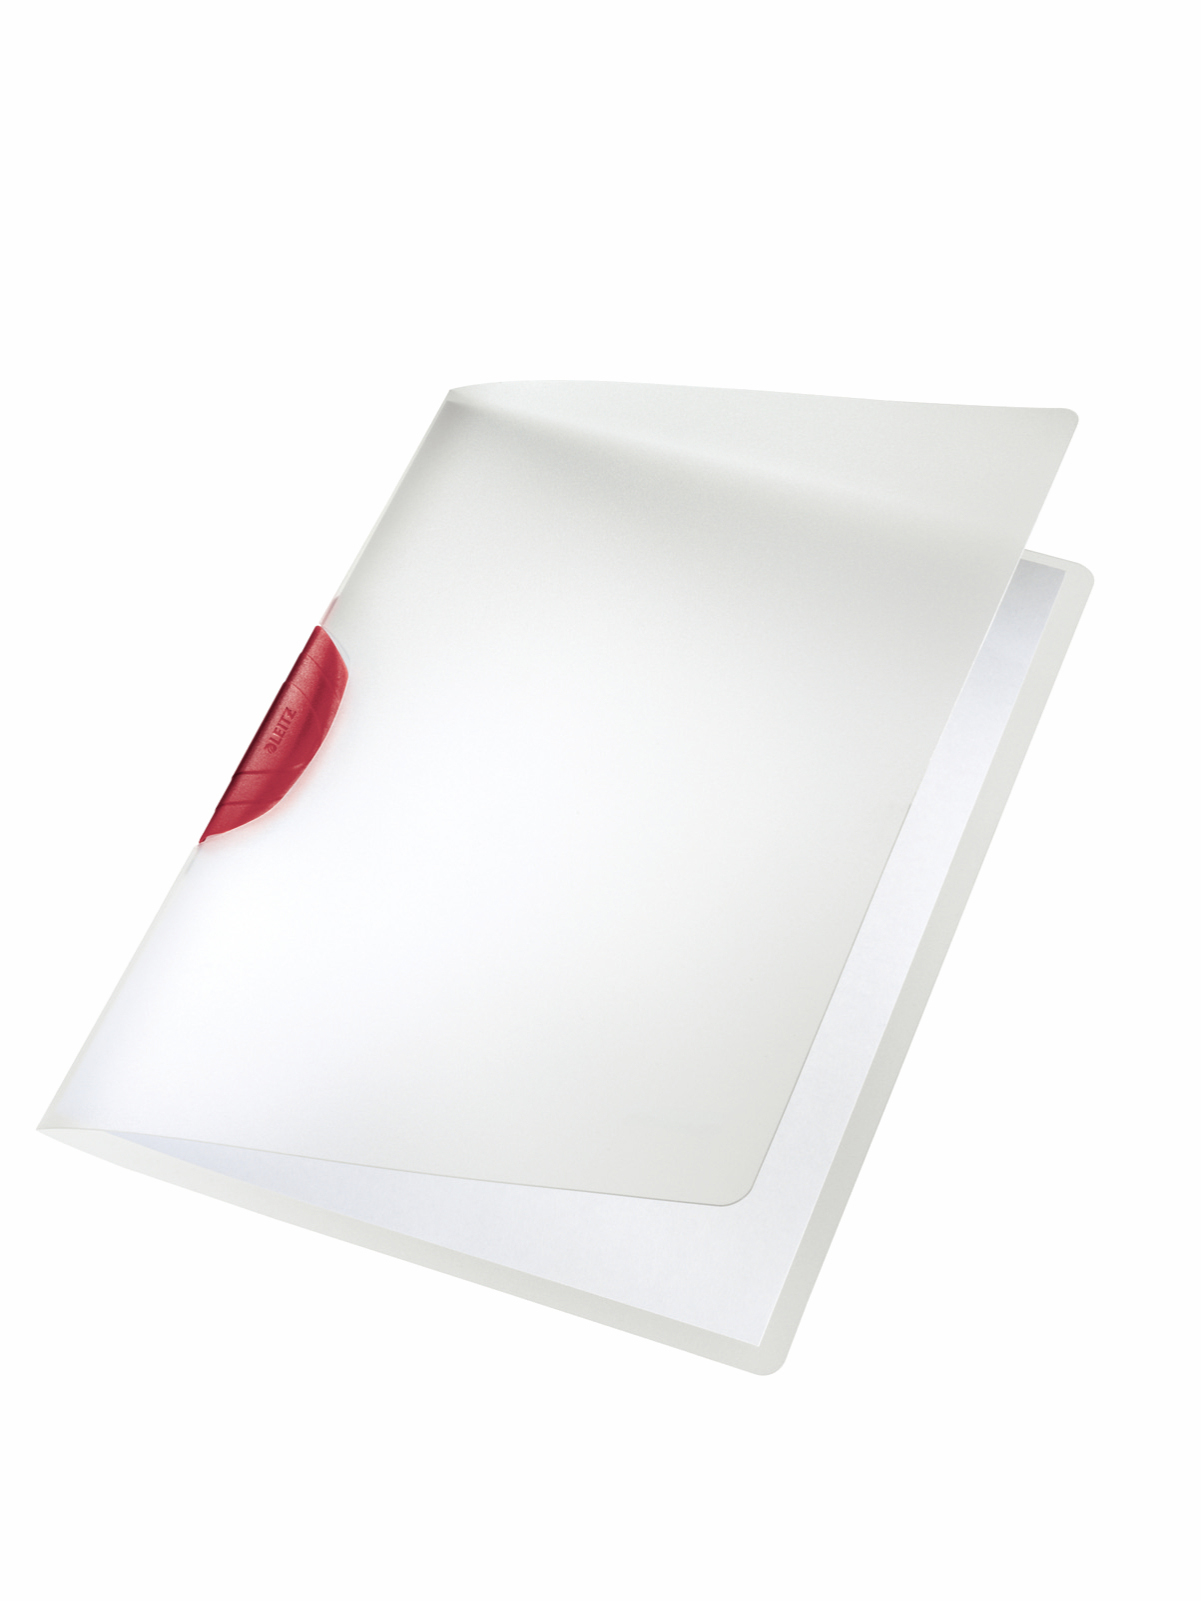 LEITZ Color Clip rot A4 41750025 transparent